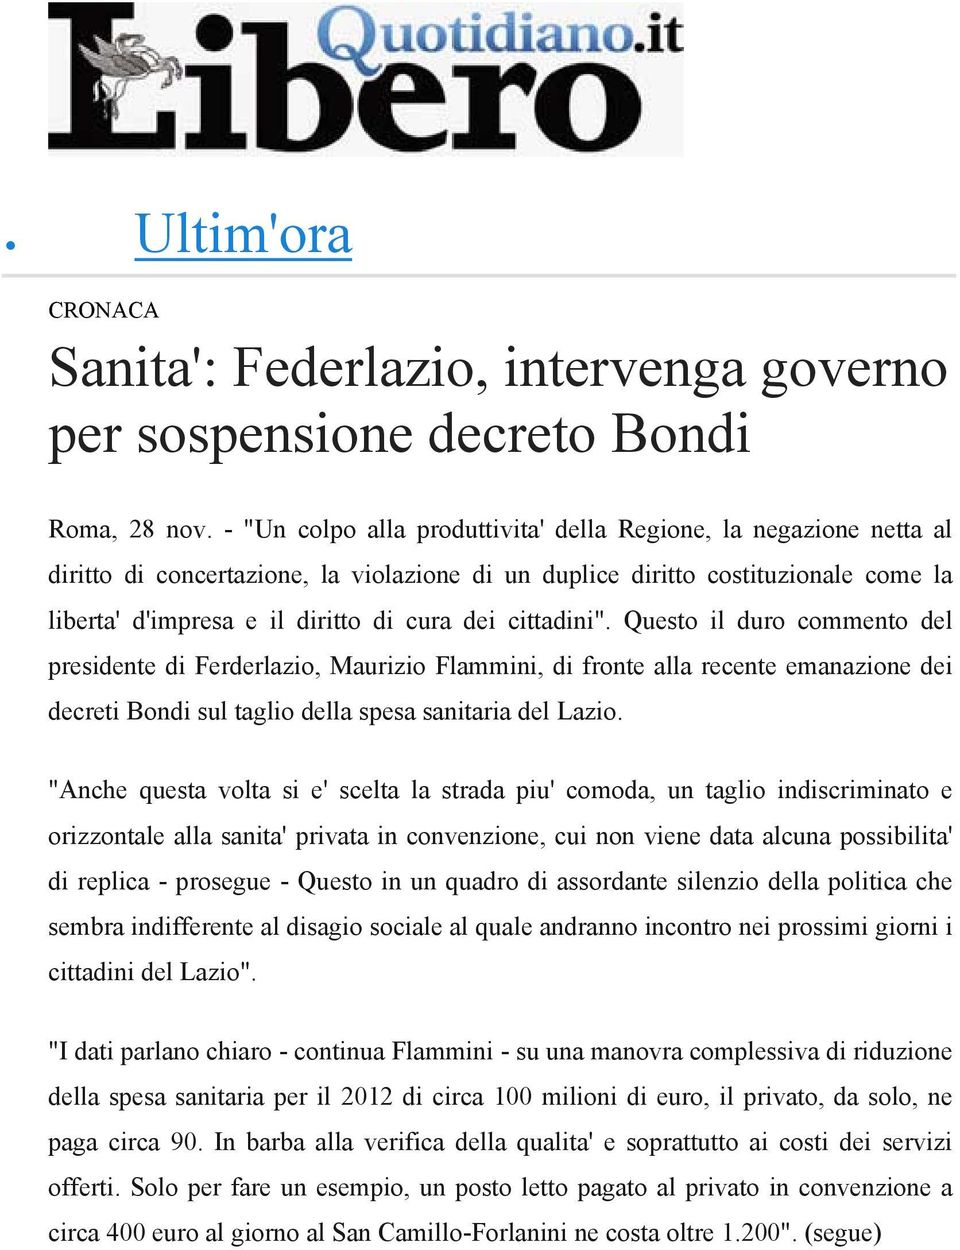 cittadini". Questo il duro commento del presidente di Ferderlazio, Maurizio Flammini, di fronte alla recente emanazione dei decreti Bondi sul taglio della spesa sanitaria del Lazio.